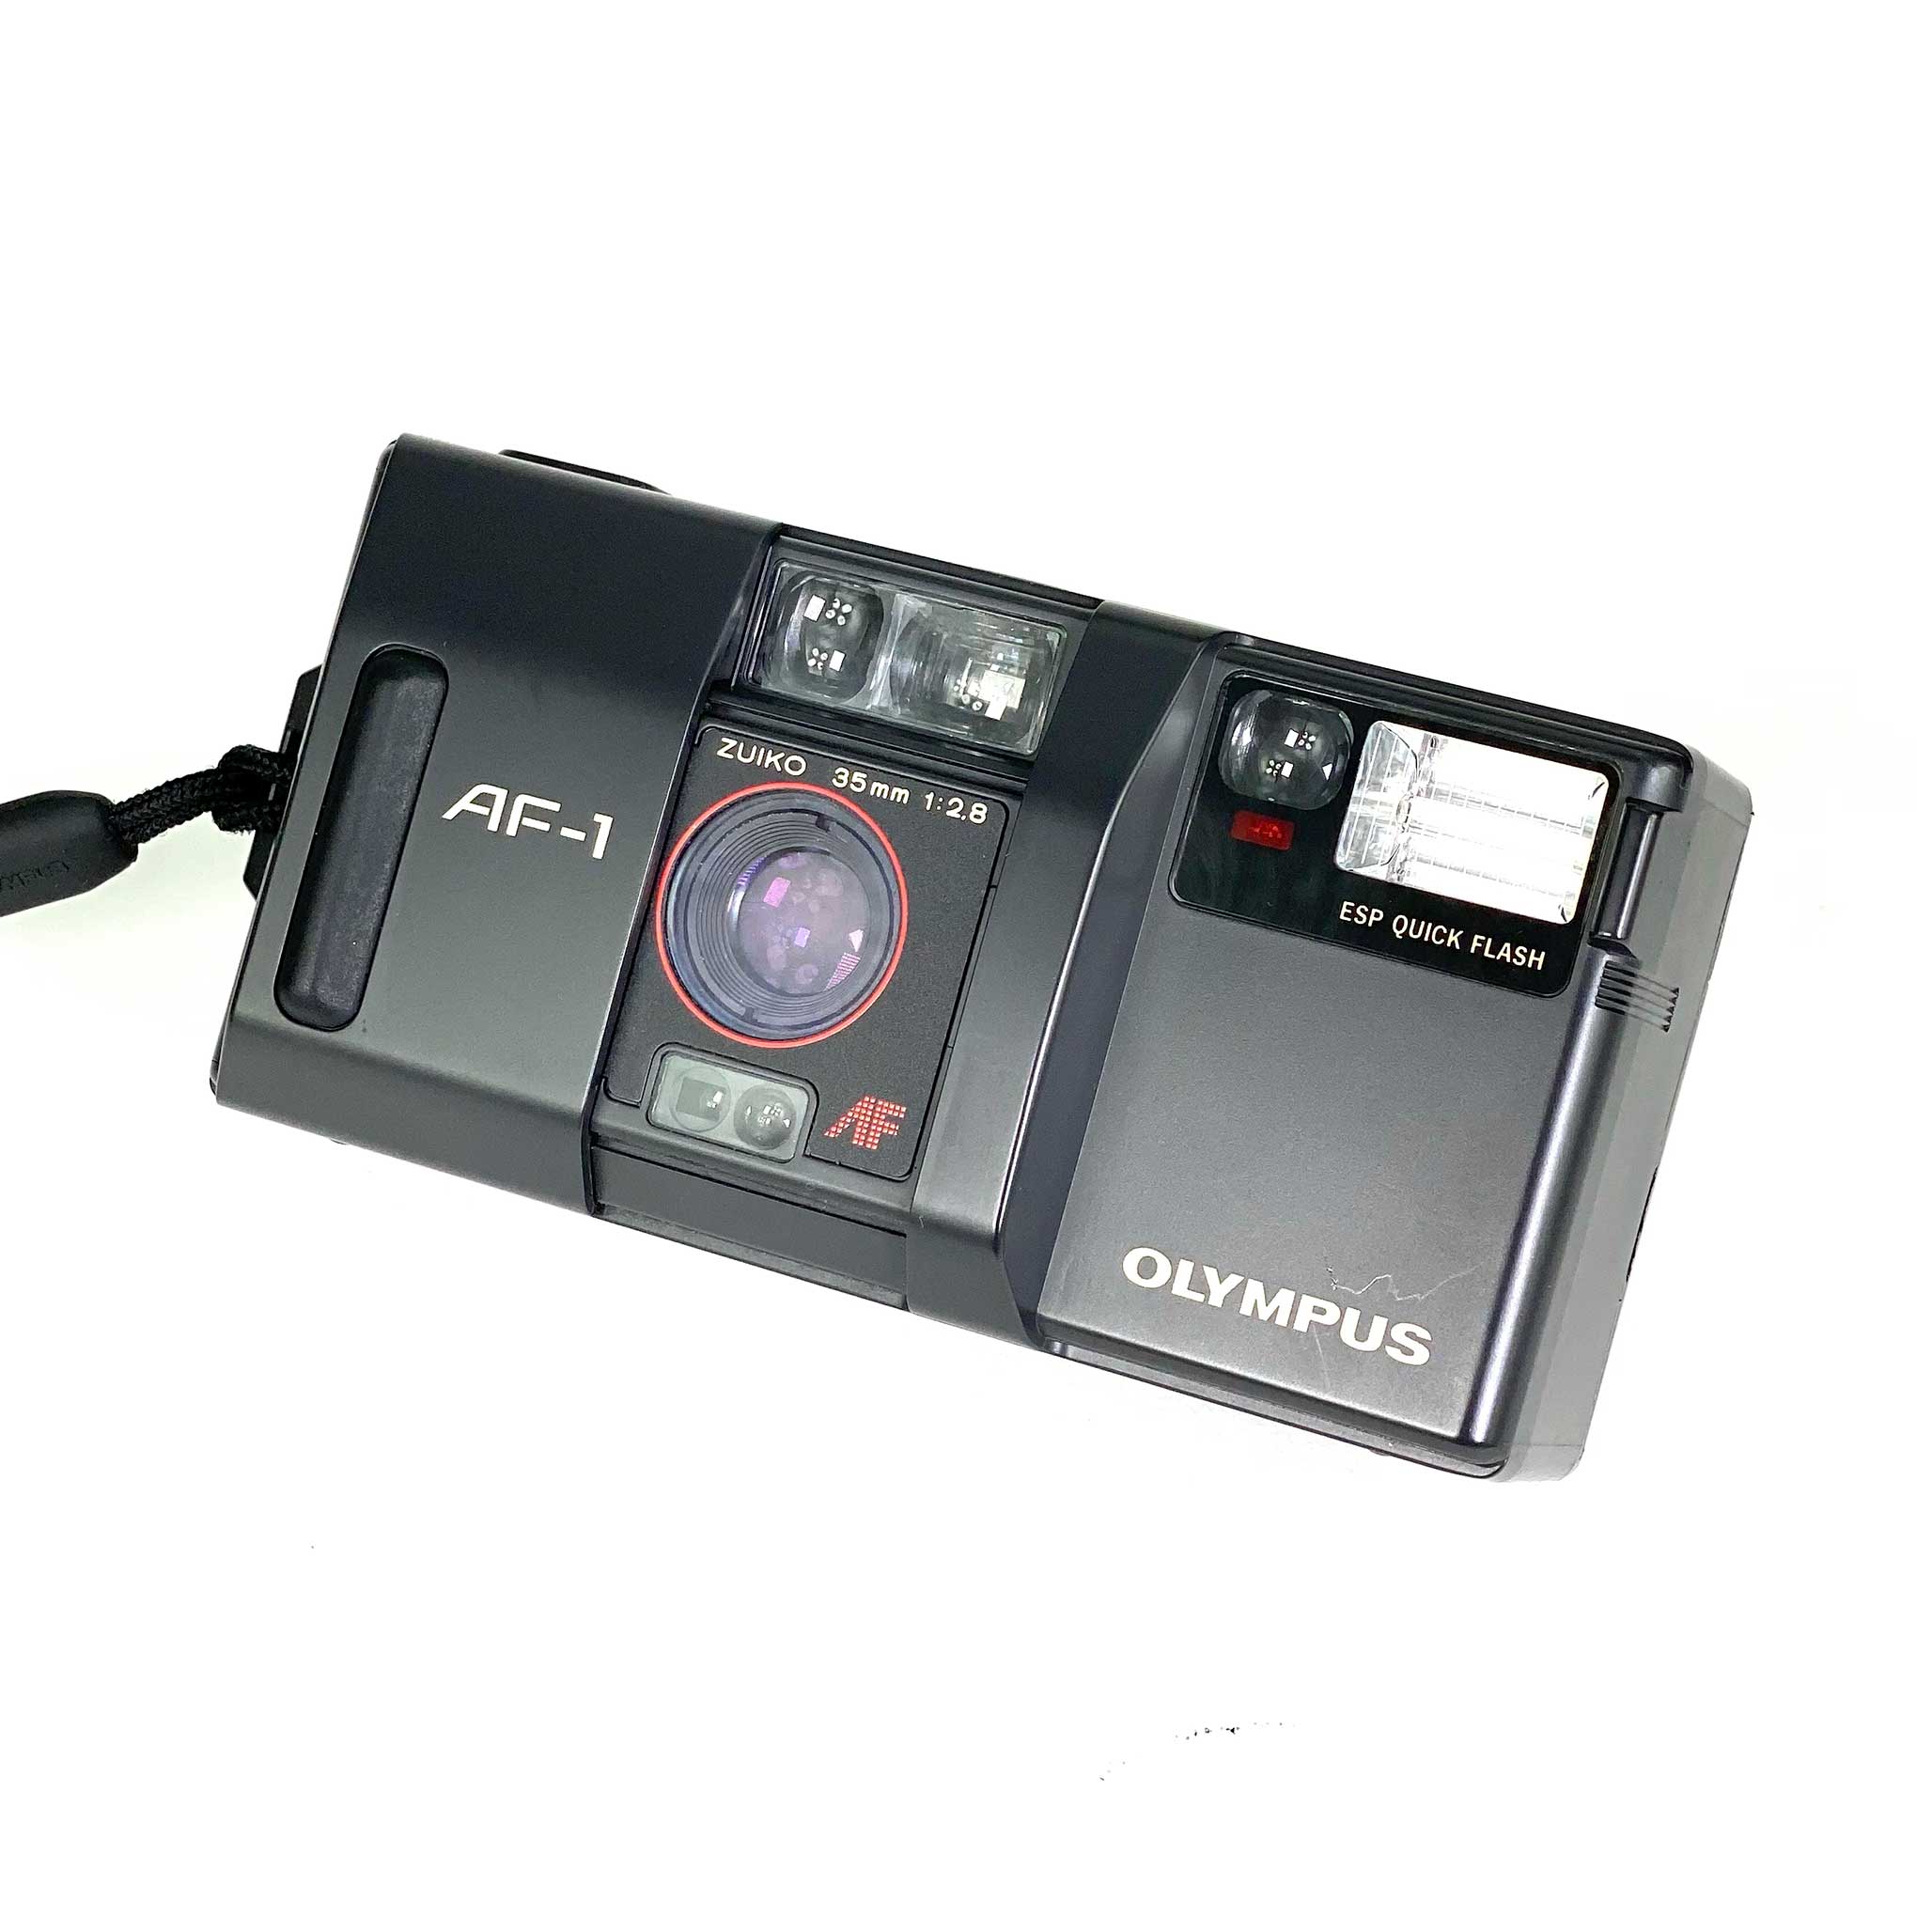 Olympus AF-1 – Retro Camera Shop